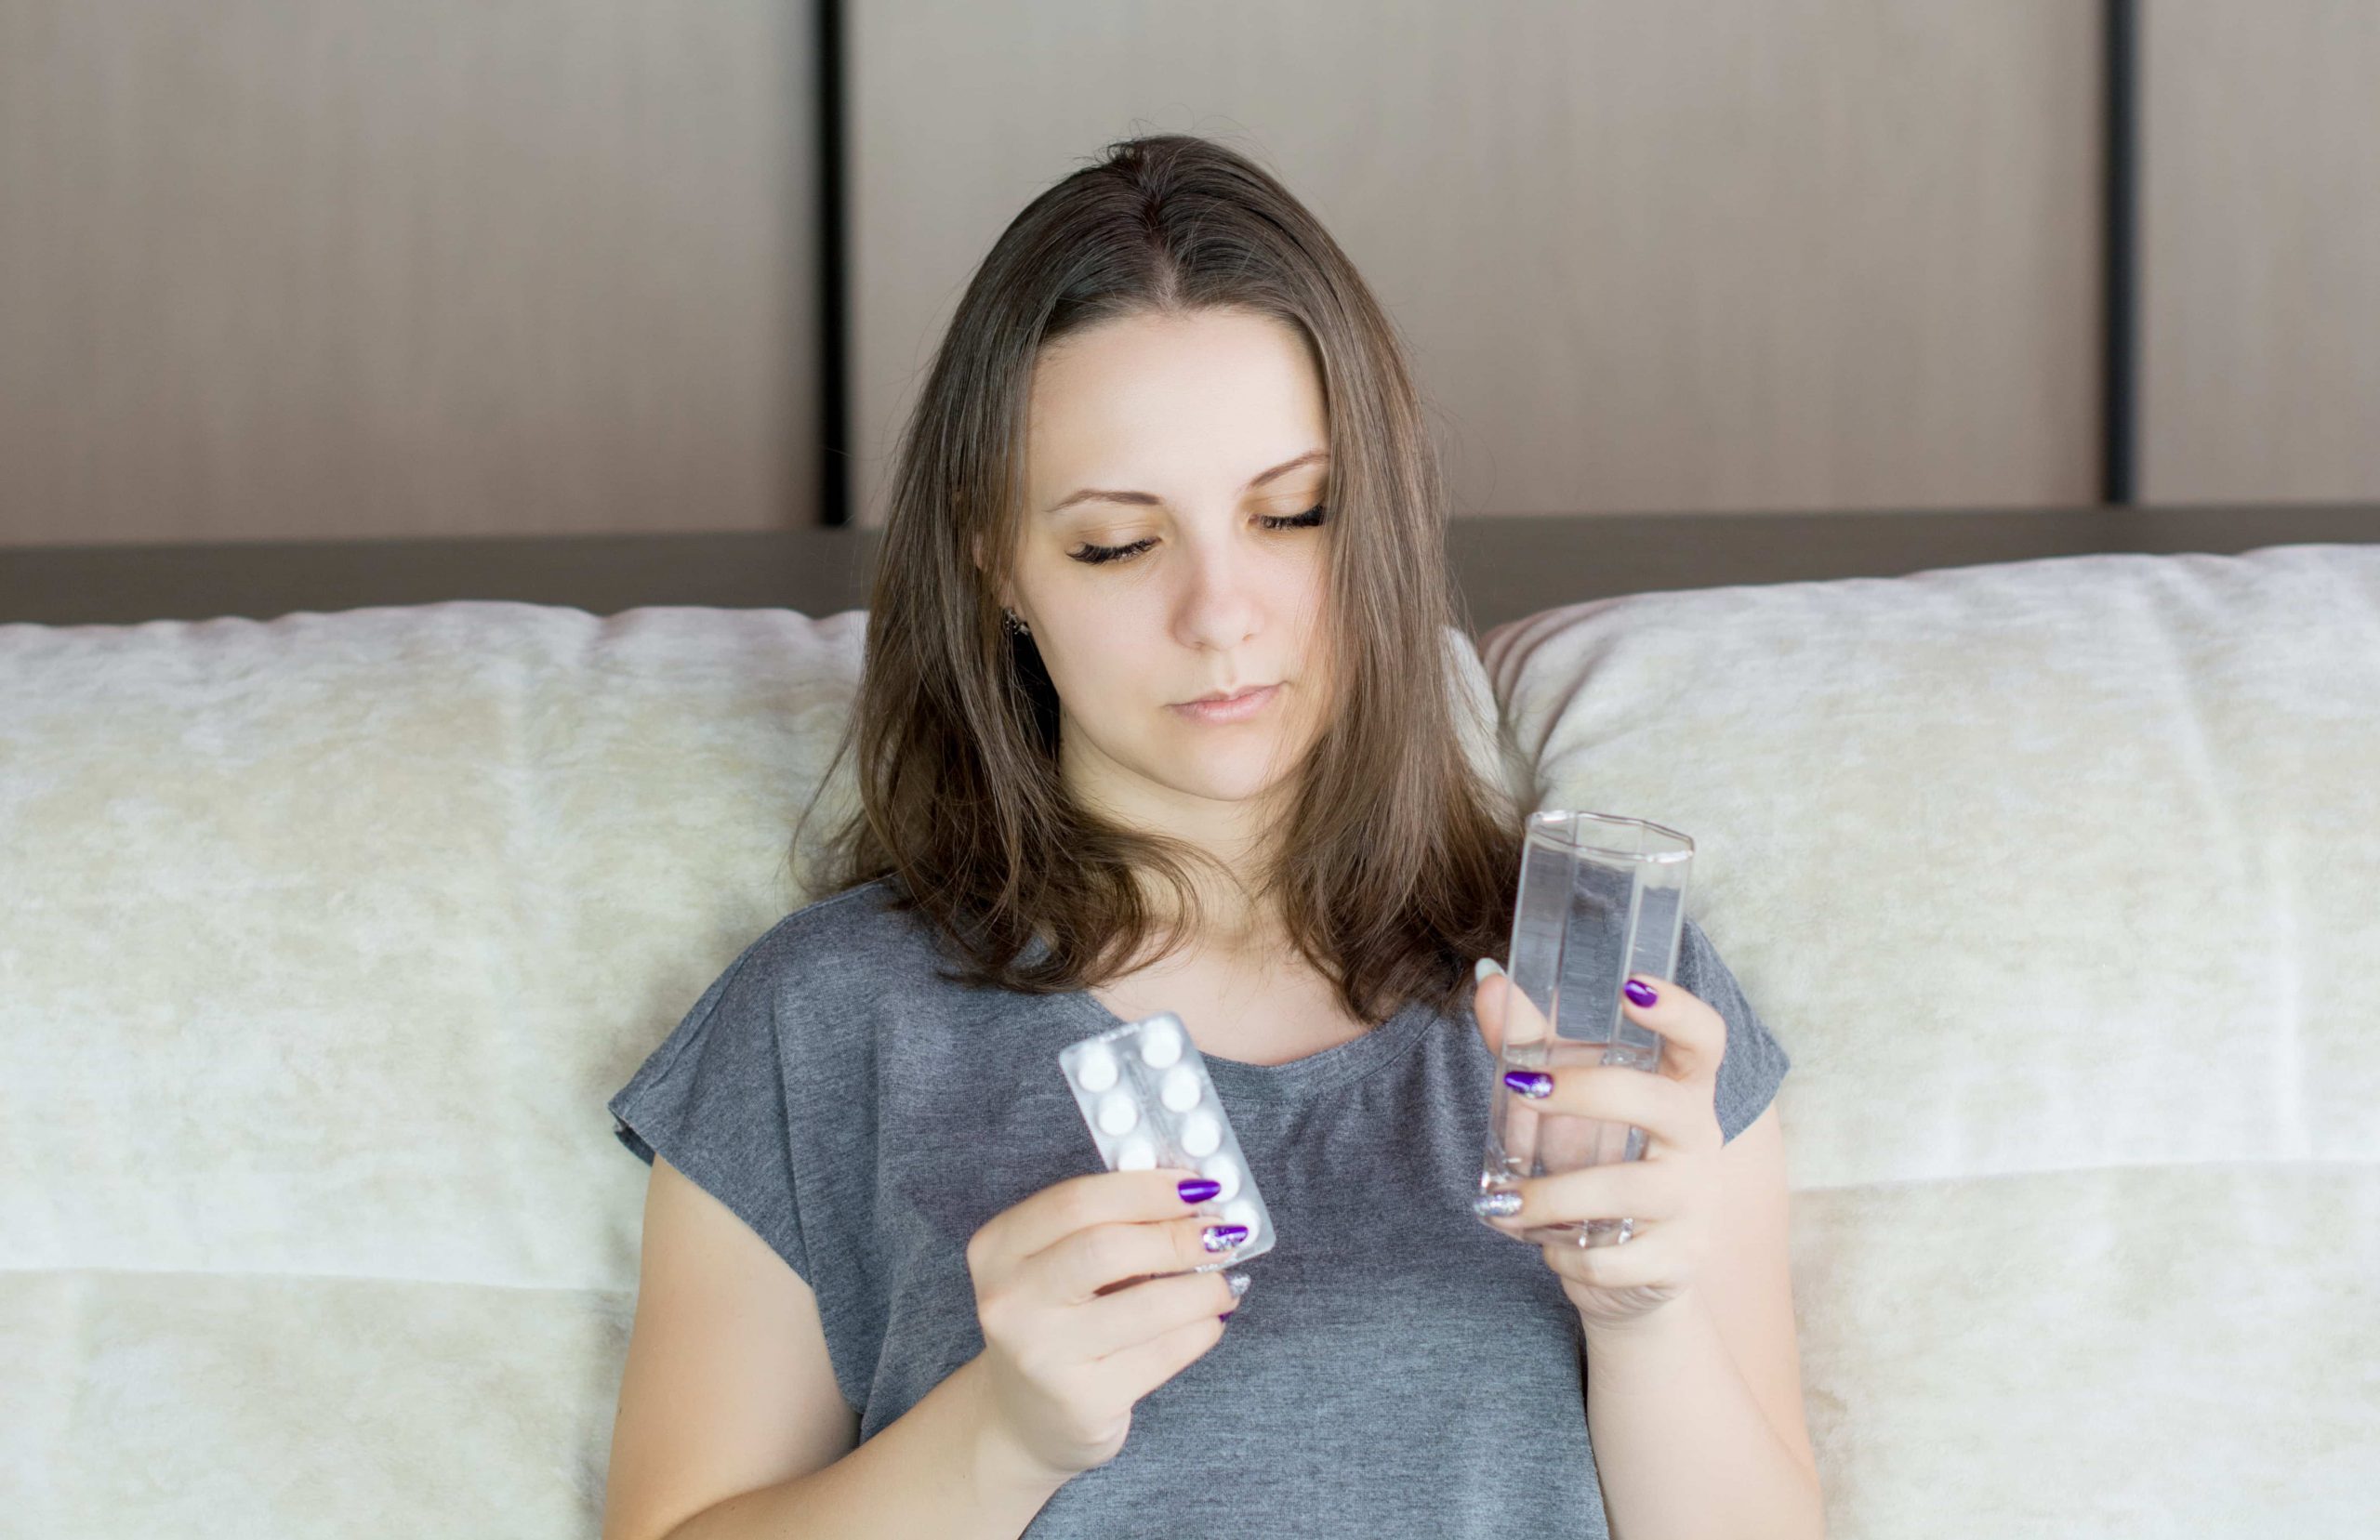 إمرأة شابة تجلس على السرير، تحمل كوب ماء ممتليء للنصف وشريط دواء وتنظر إليهما